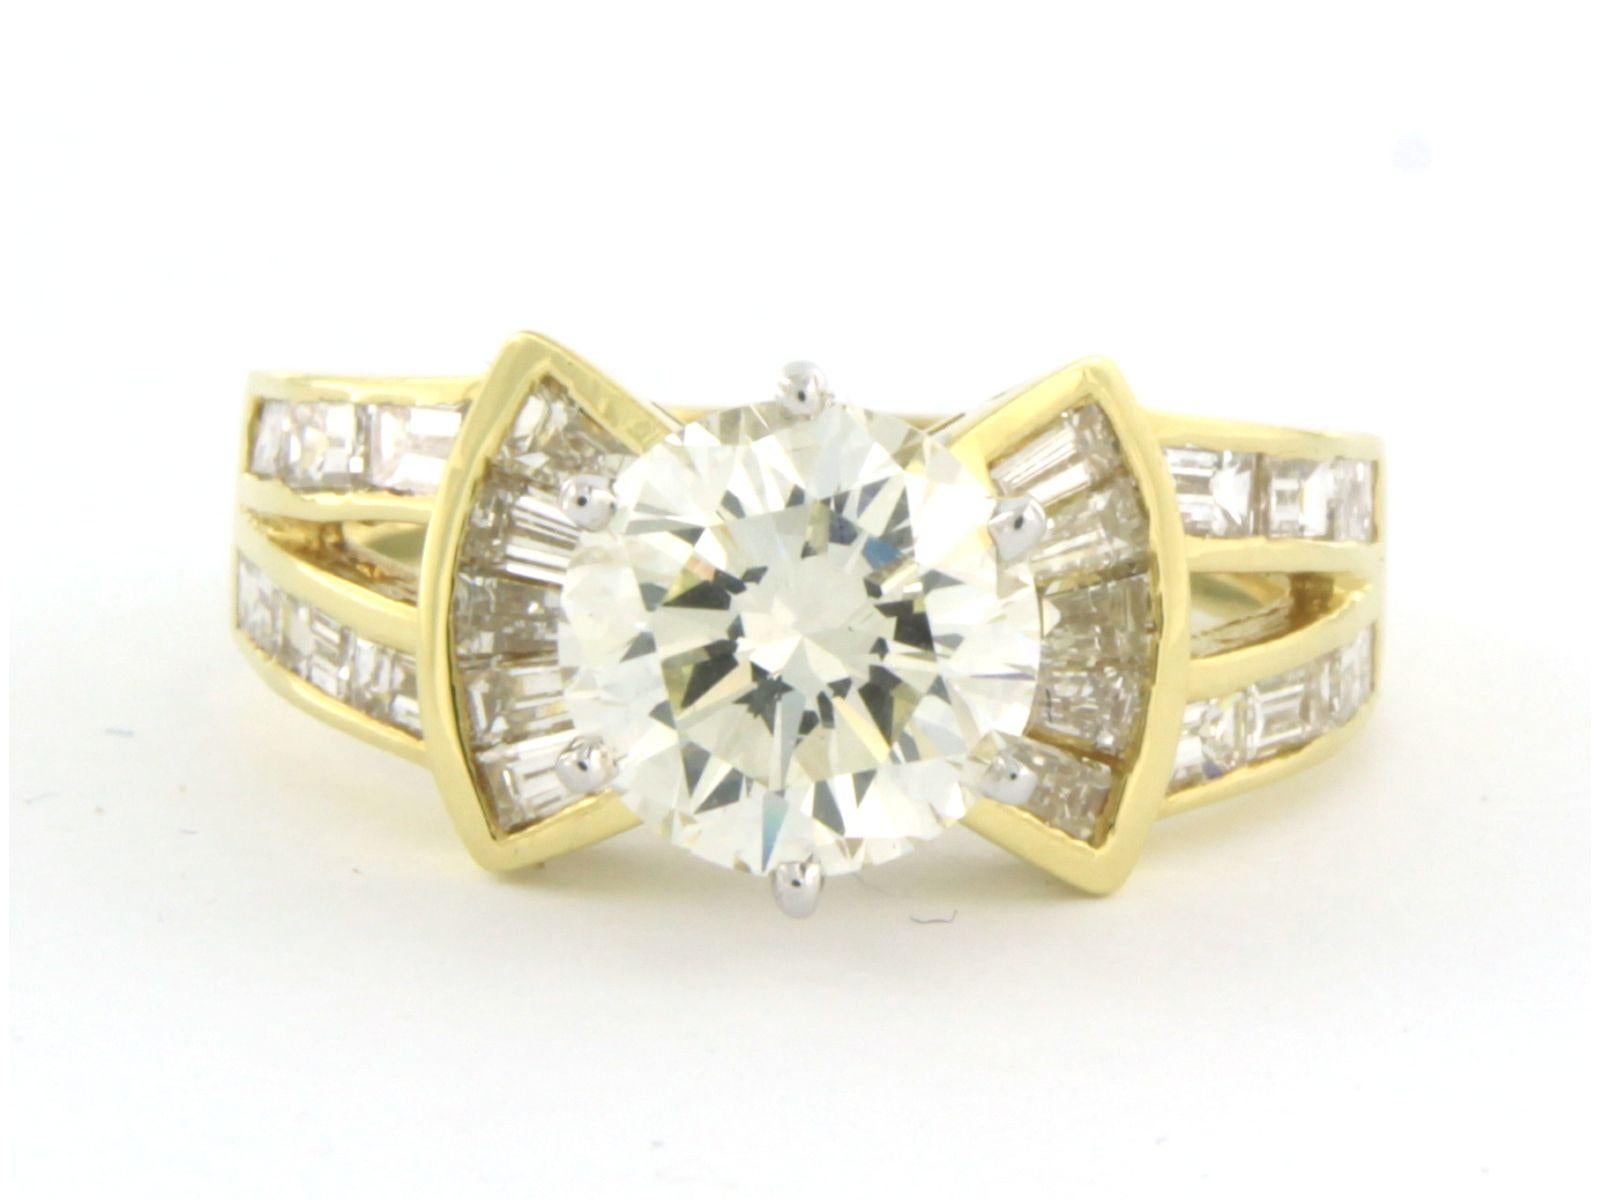 Ring aus 18 Karat Bicolor-Gold, besetzt mit einem Diamanten im Brillantschliff. 2,20ct - N/O - VS/SI - und Diamanten im Kegel- und Baquetschliff bis zu. 1,20ct - F/G - VS/SI - Ringgröße U.S. 7.25 - EU. 17.5 (55)

detaillierte Beschreibung:

die